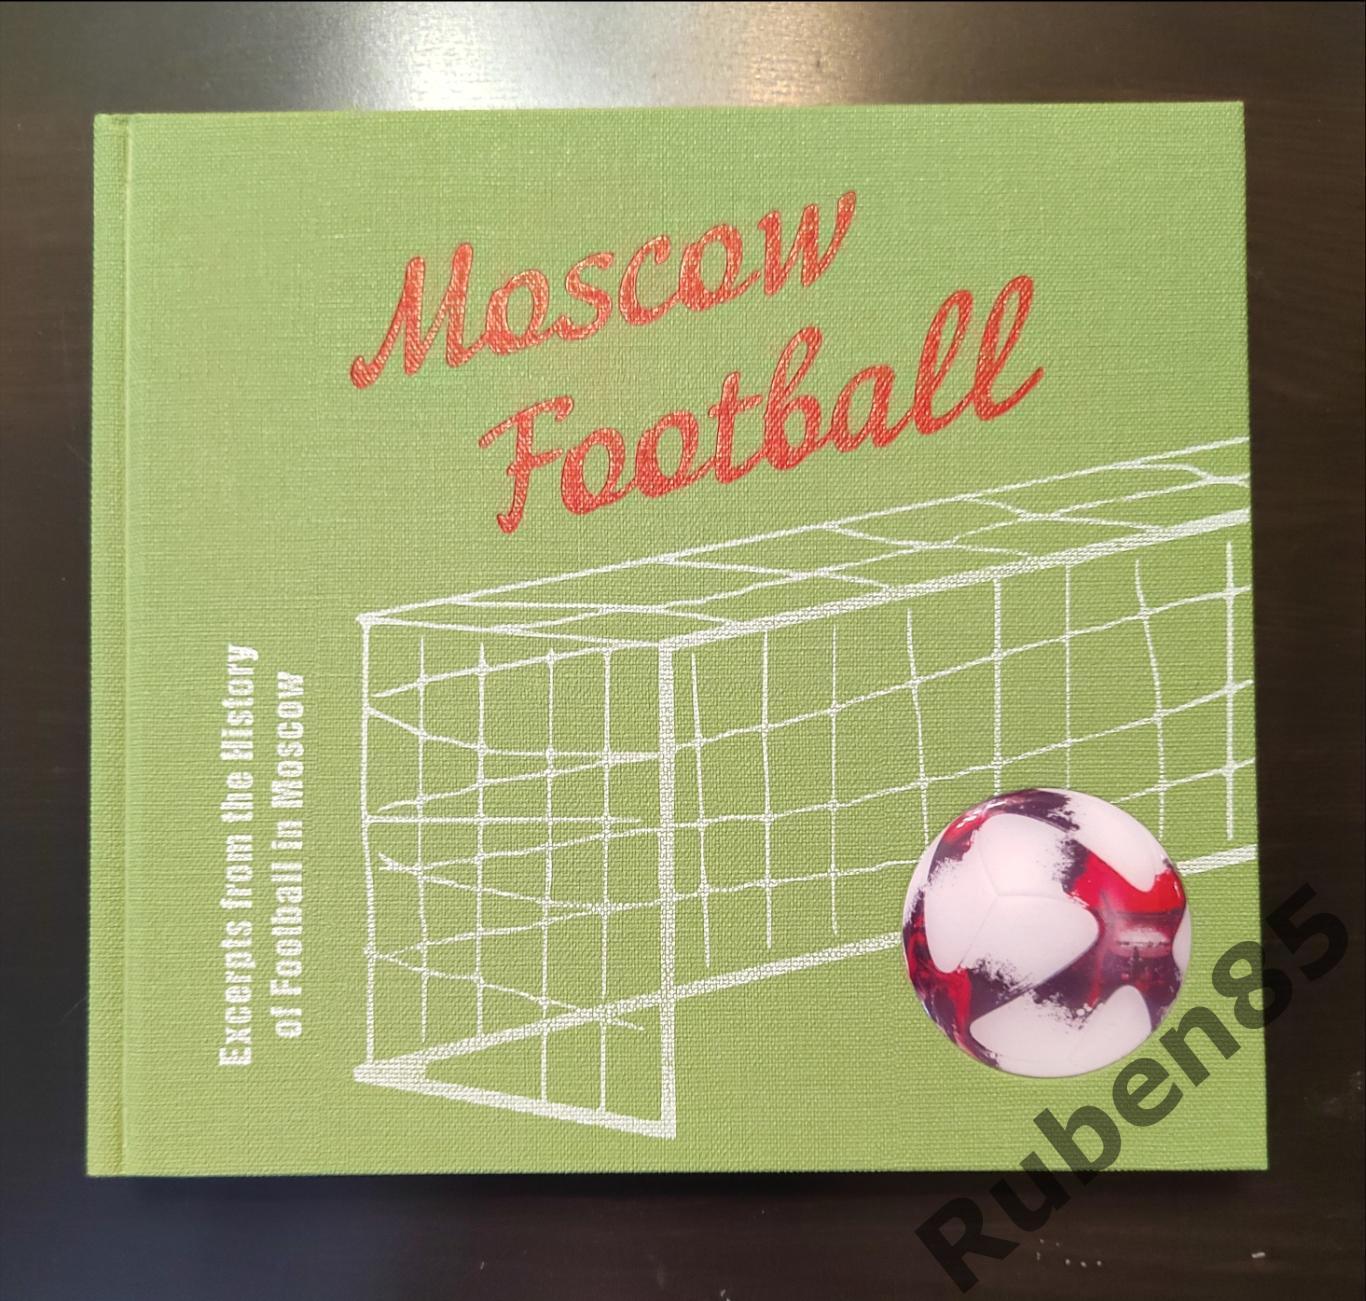 SALE • Москва Футбольная из истории московского футбола - на английском языке